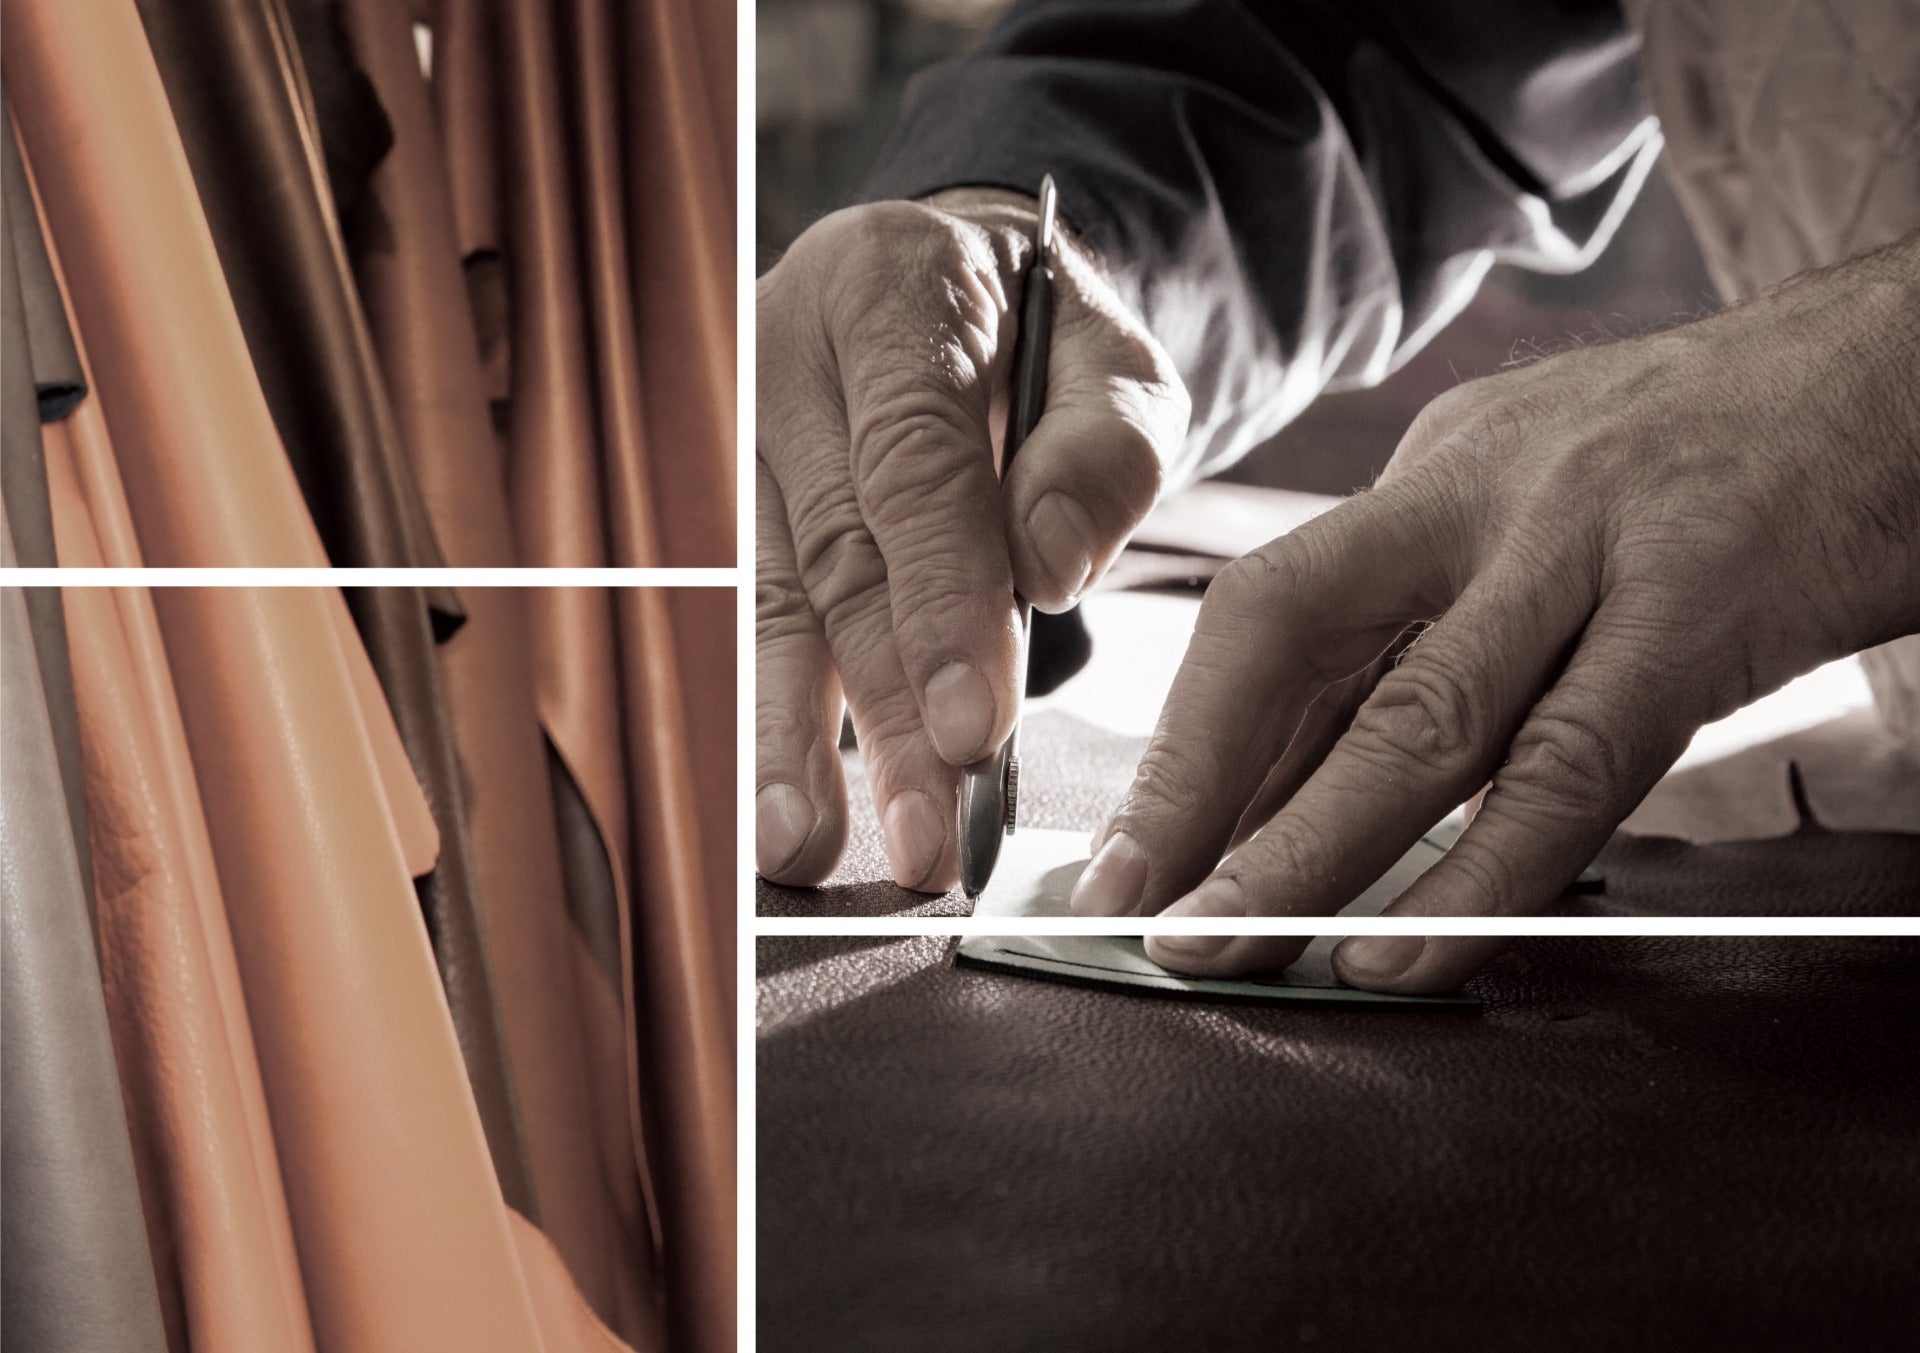 Un artesano trabaja cuidadosamente en una pieza de cuero plena flor en un taller de cuero tradicional.